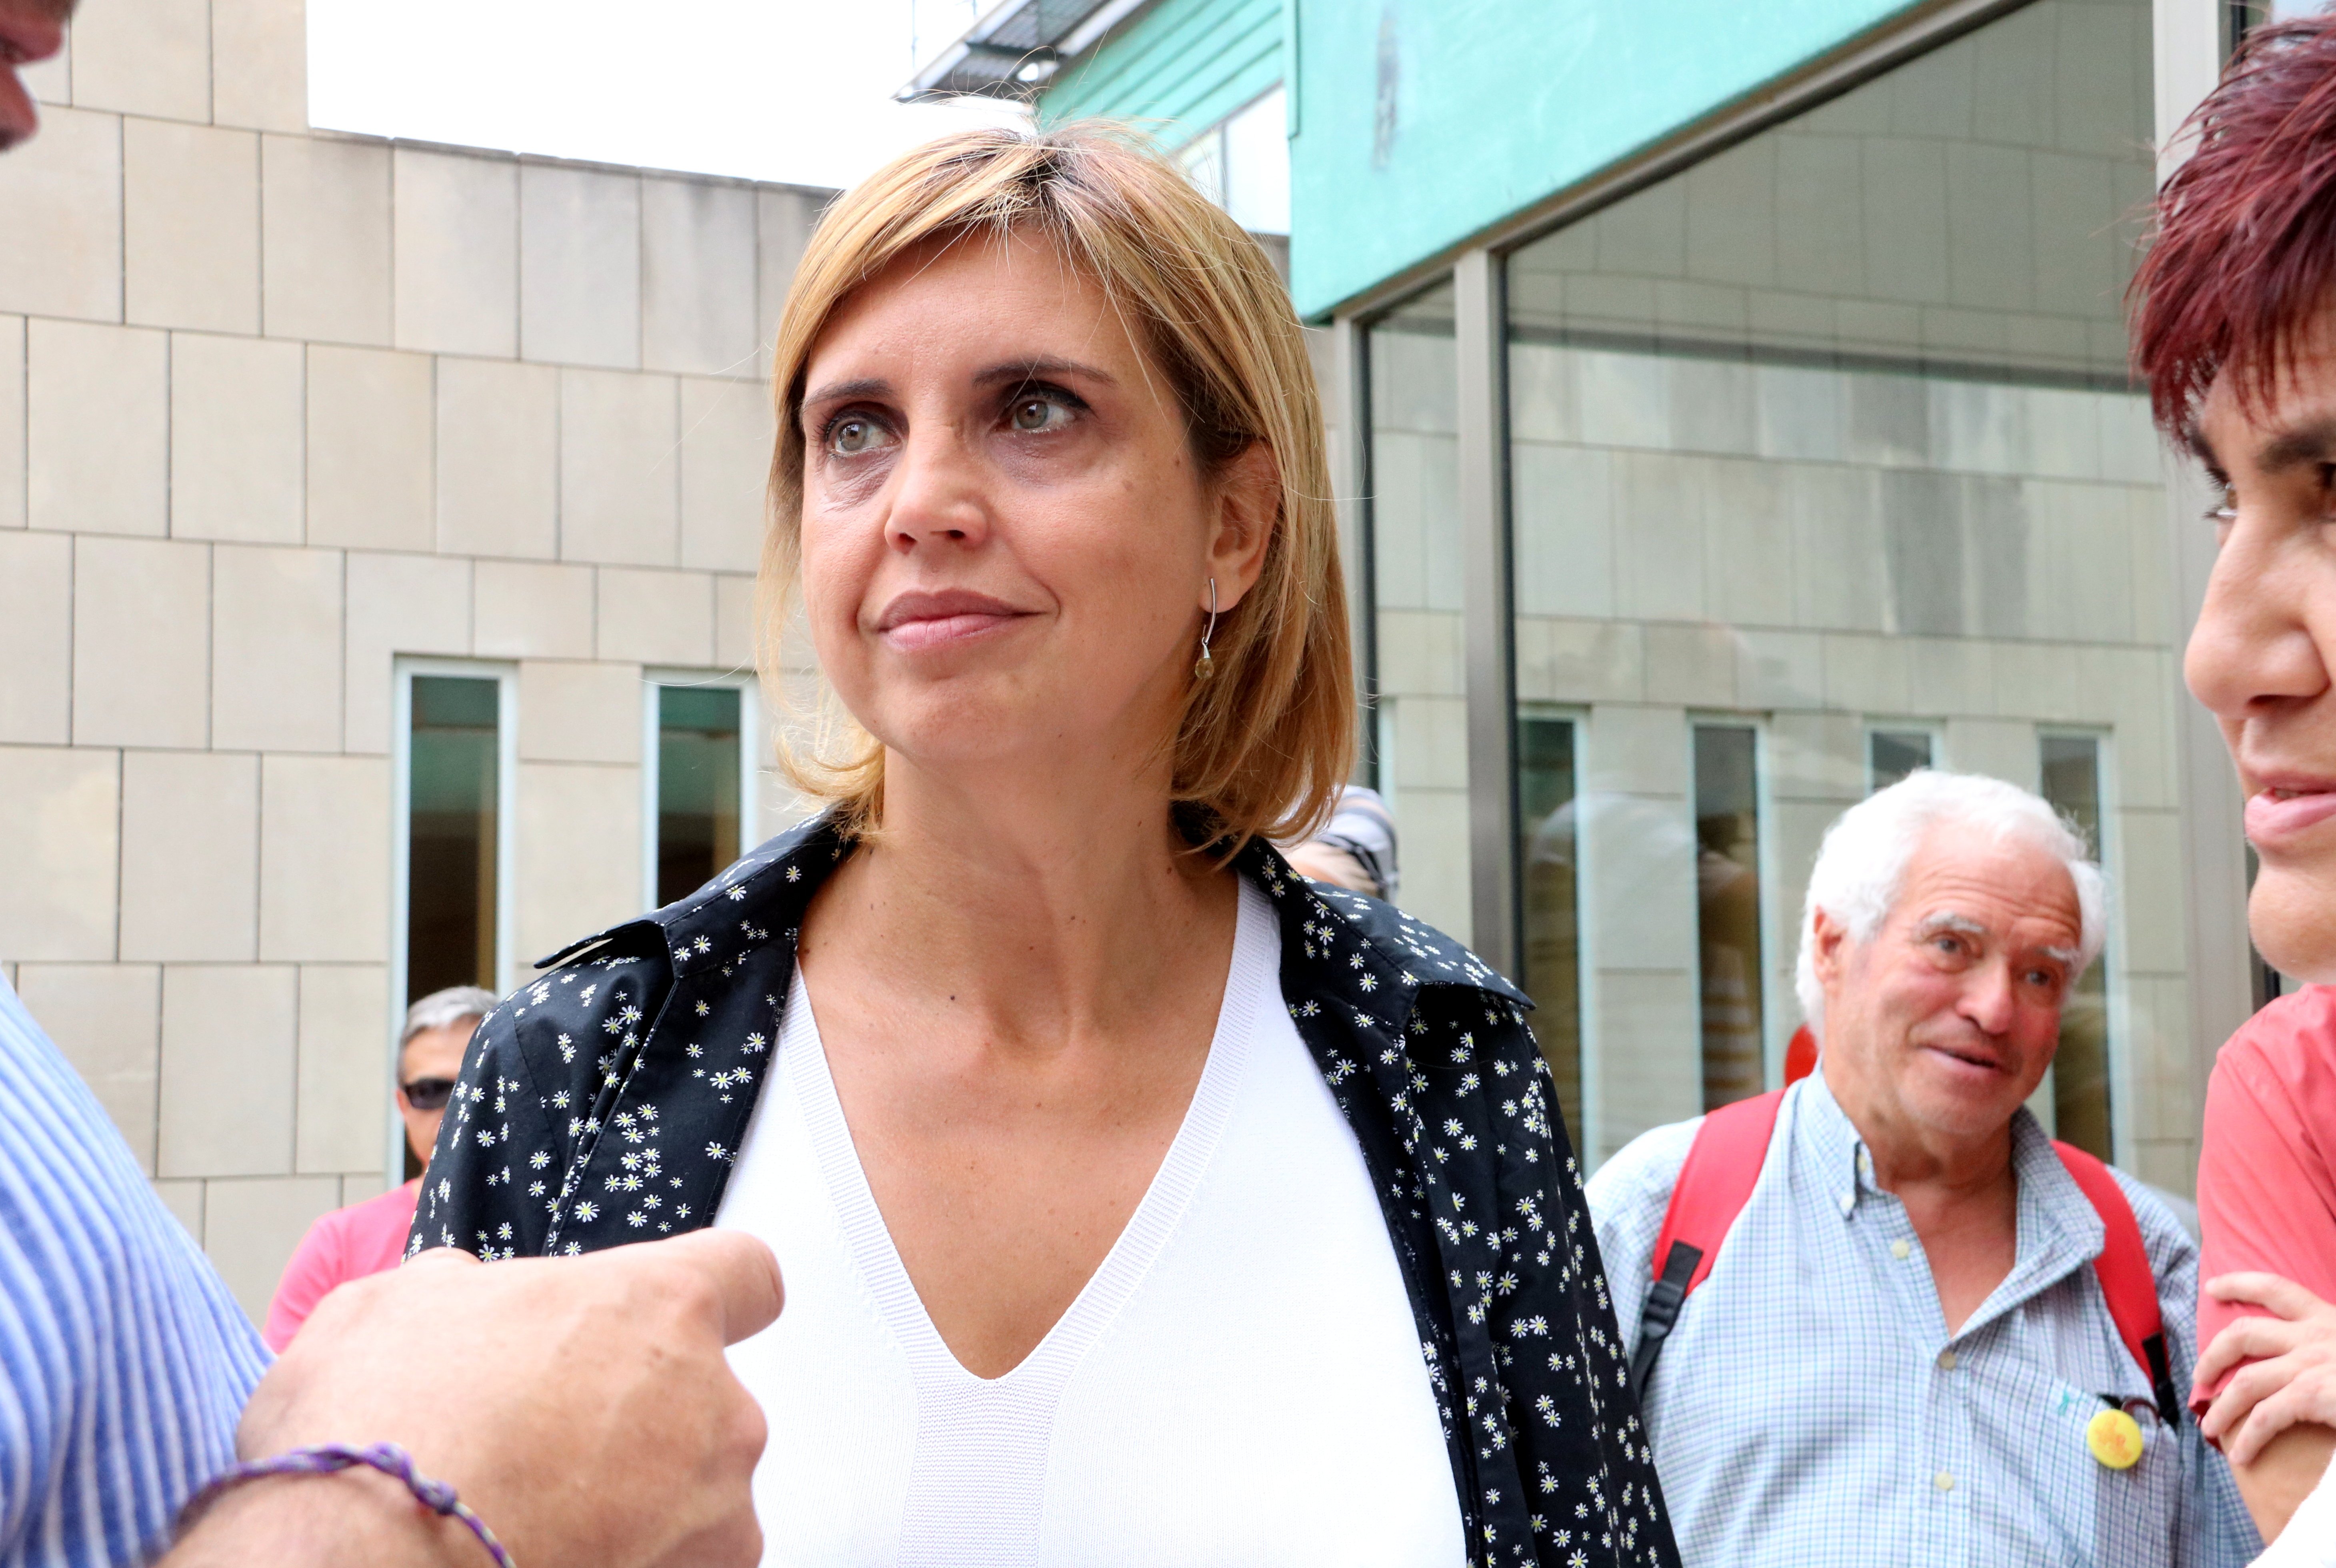 L'alcaldessa de Figueres declara que l'1-O va actuar "com una ciutadana més"